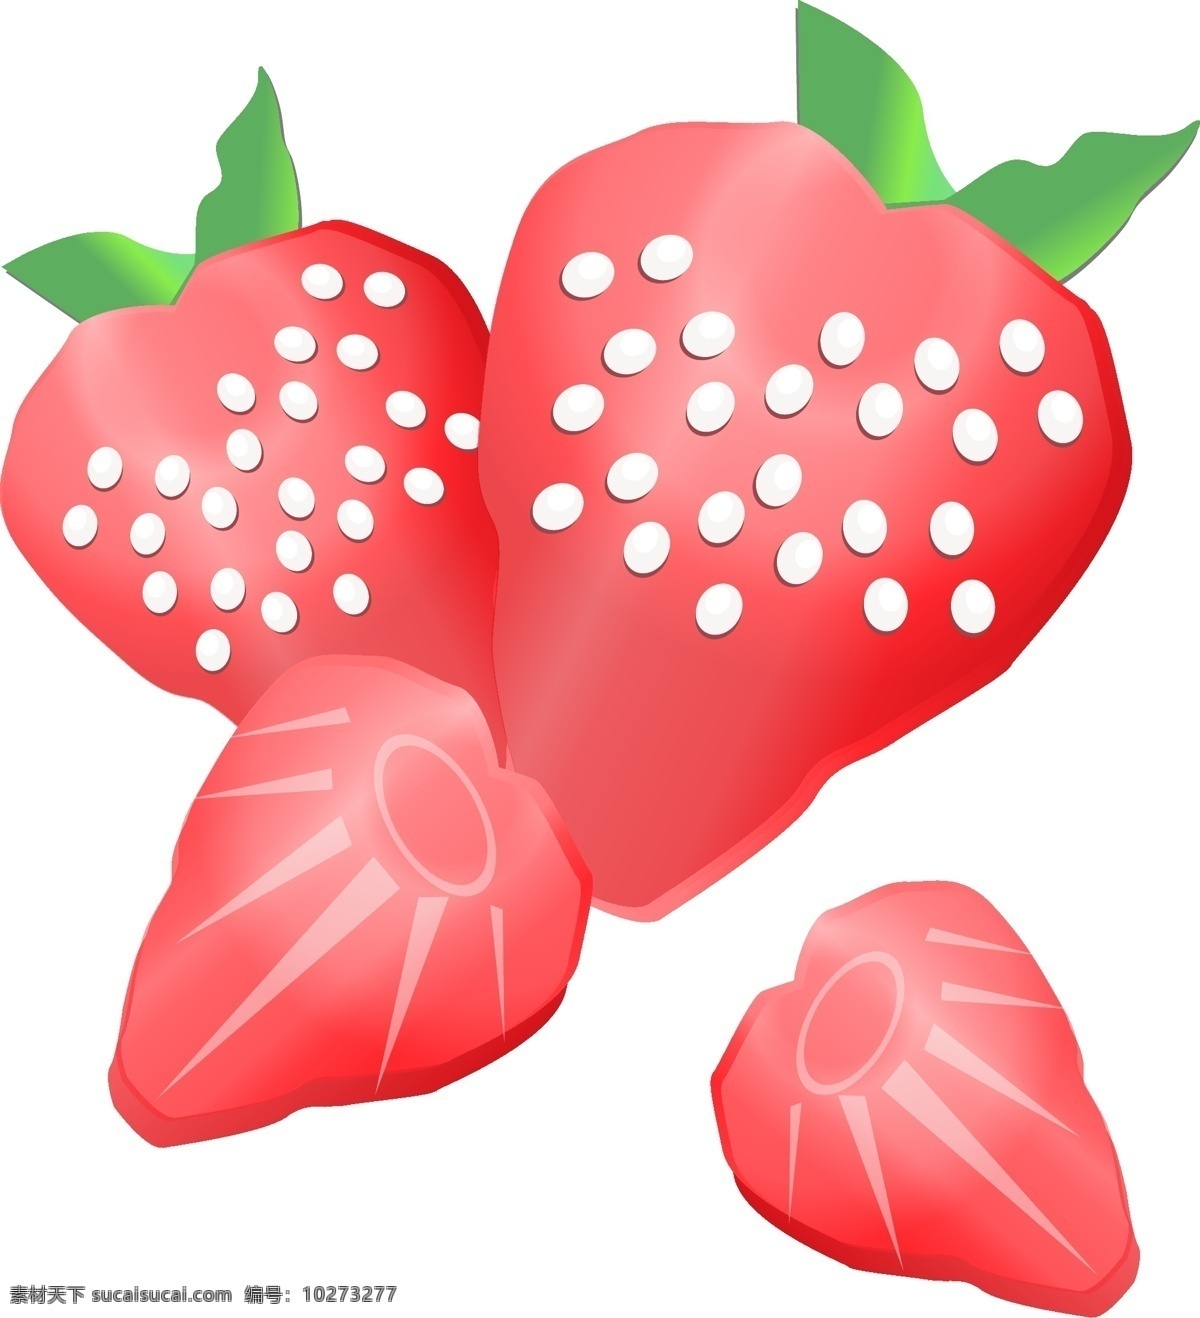 水果 草莓 手绘 插画 手绘草莓 新鲜的草莓 营养草莓 草莓插画 漂亮的草莓 美味的草莓 健康草莓